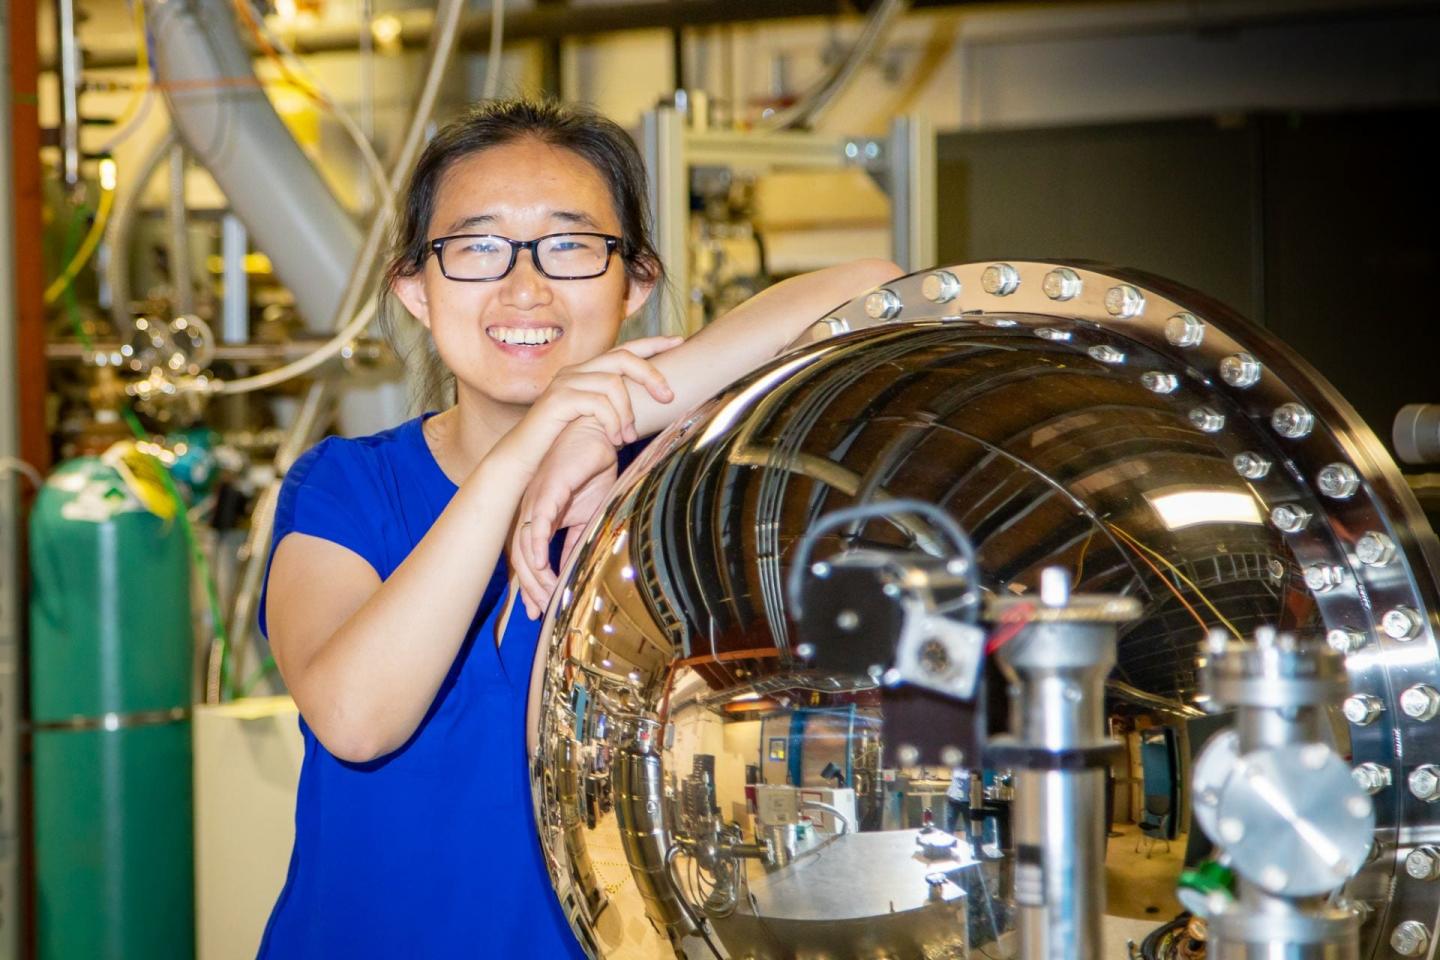 Rice University Physicist Ming Yi